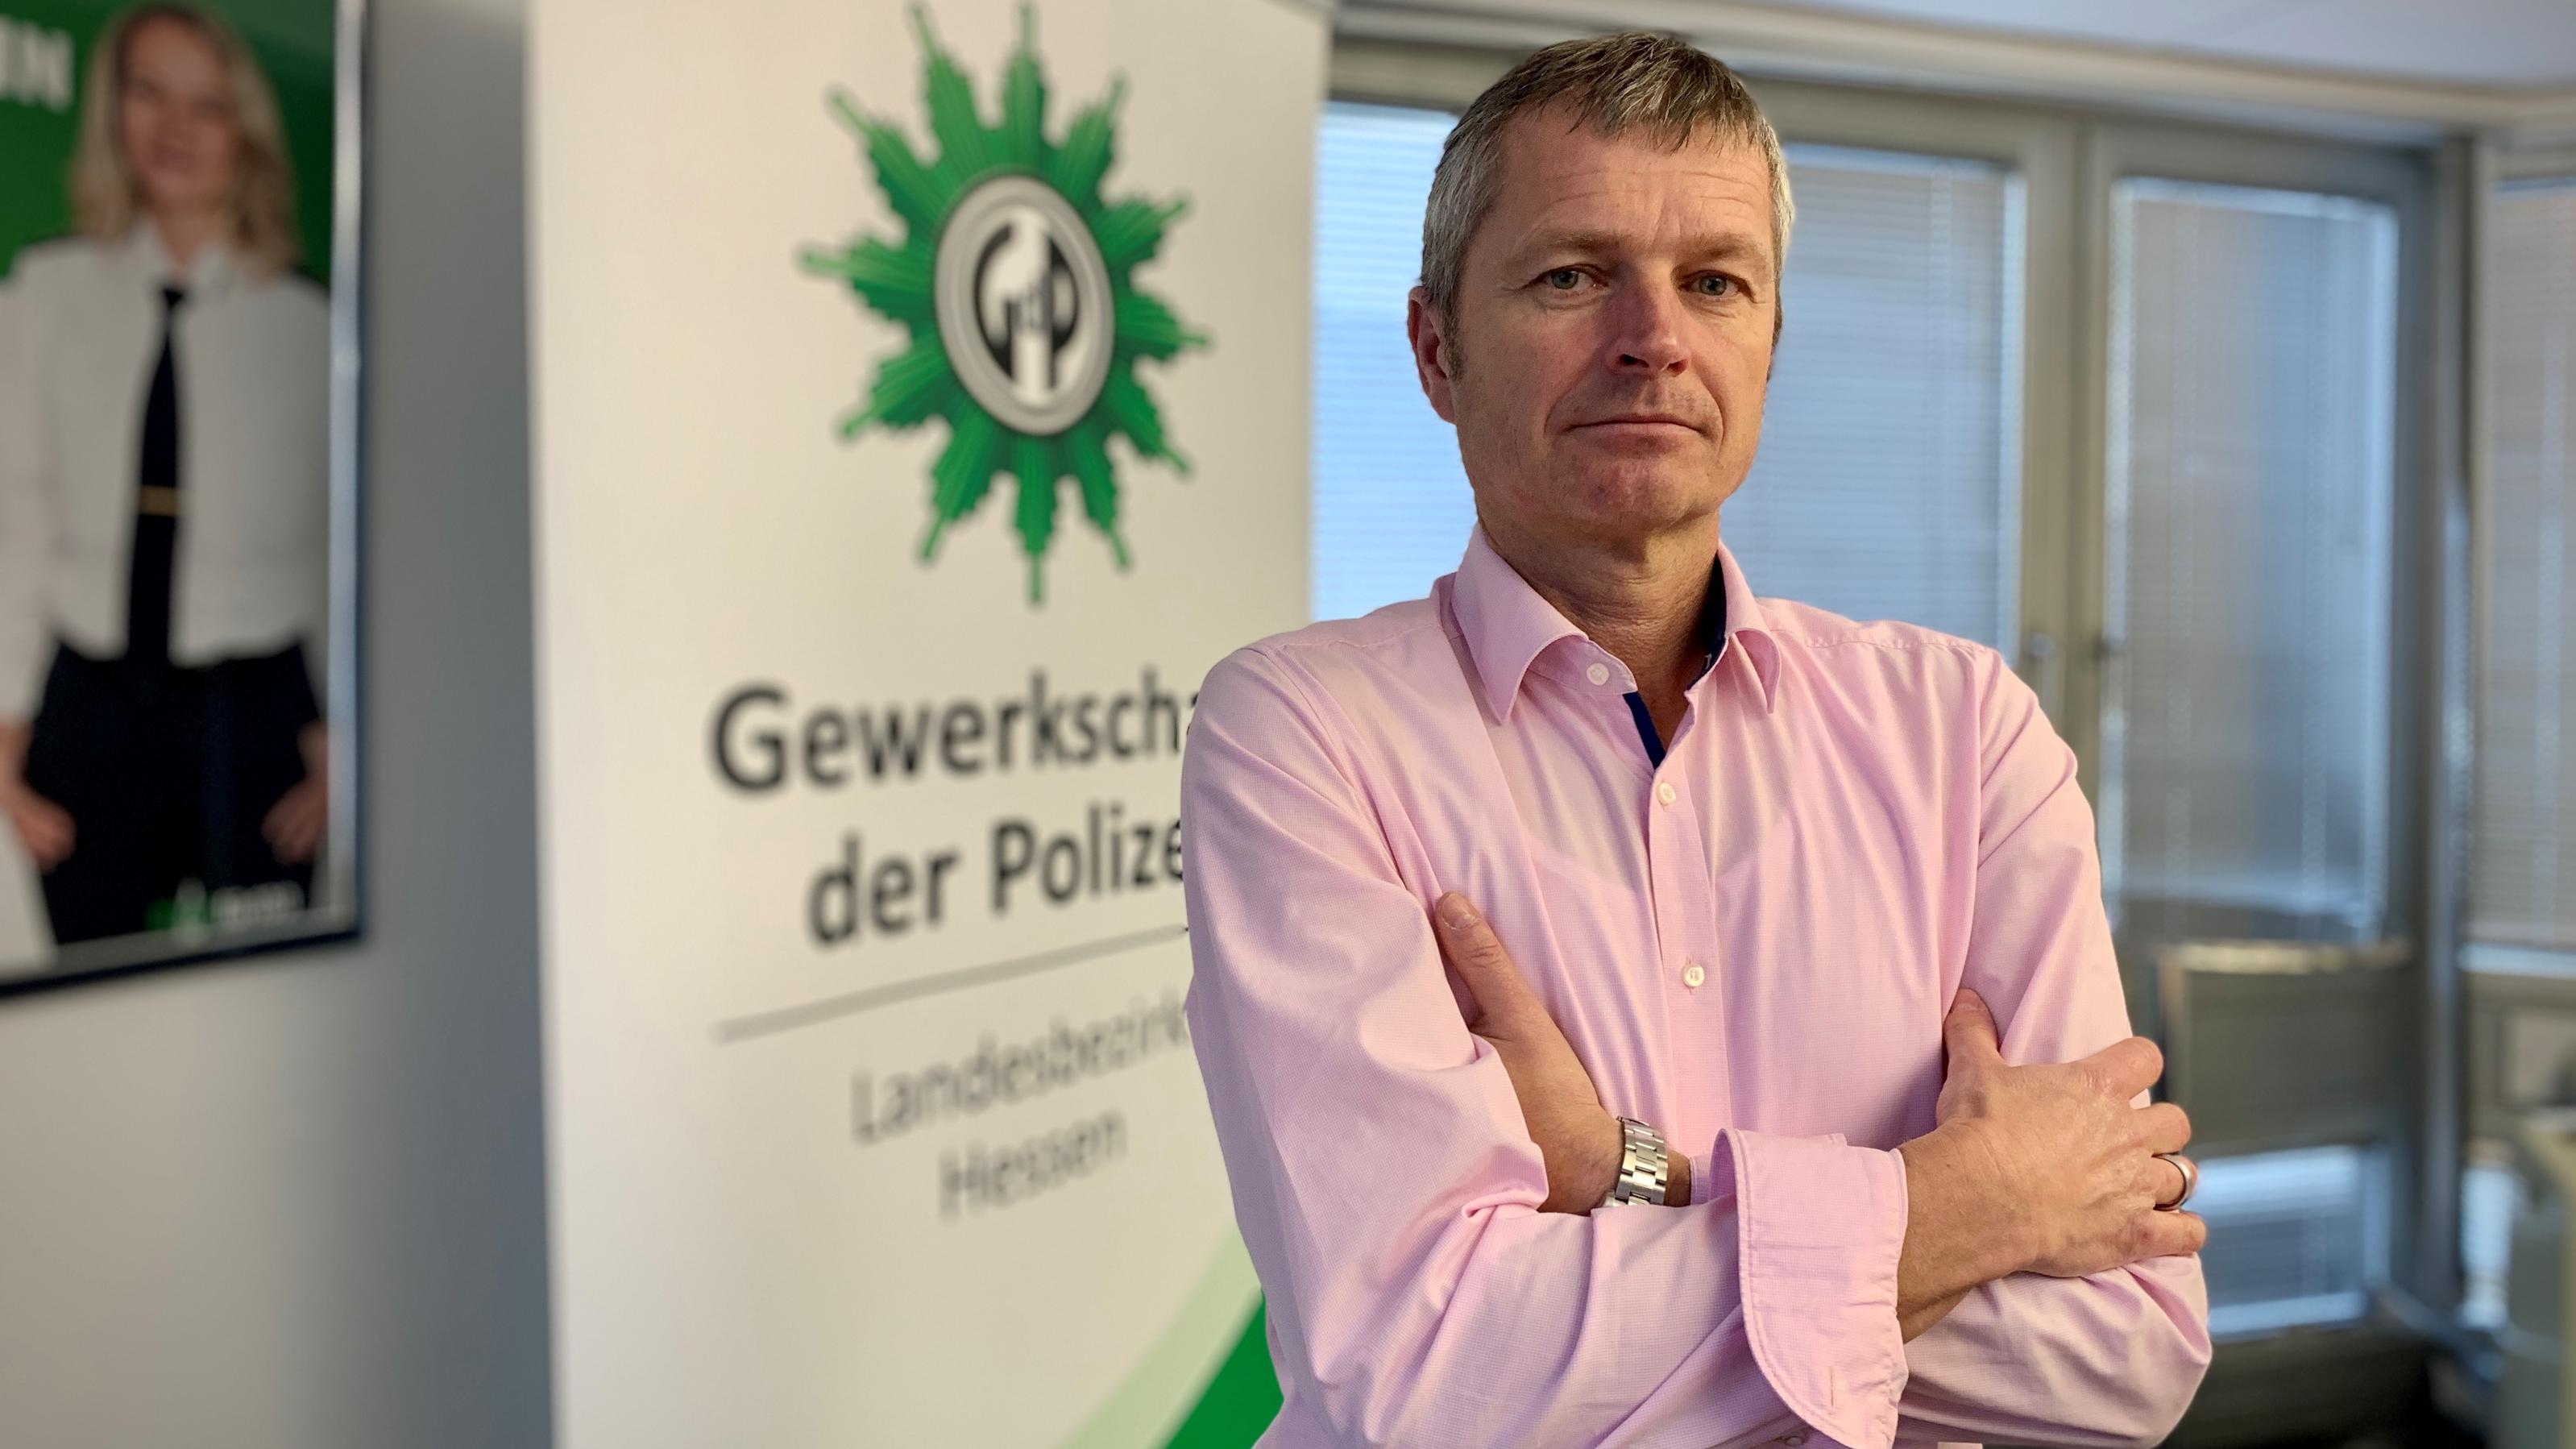 Jens Mohrherr ist Vorsitzender der Gewerkschaft der Polizei in Hessen.